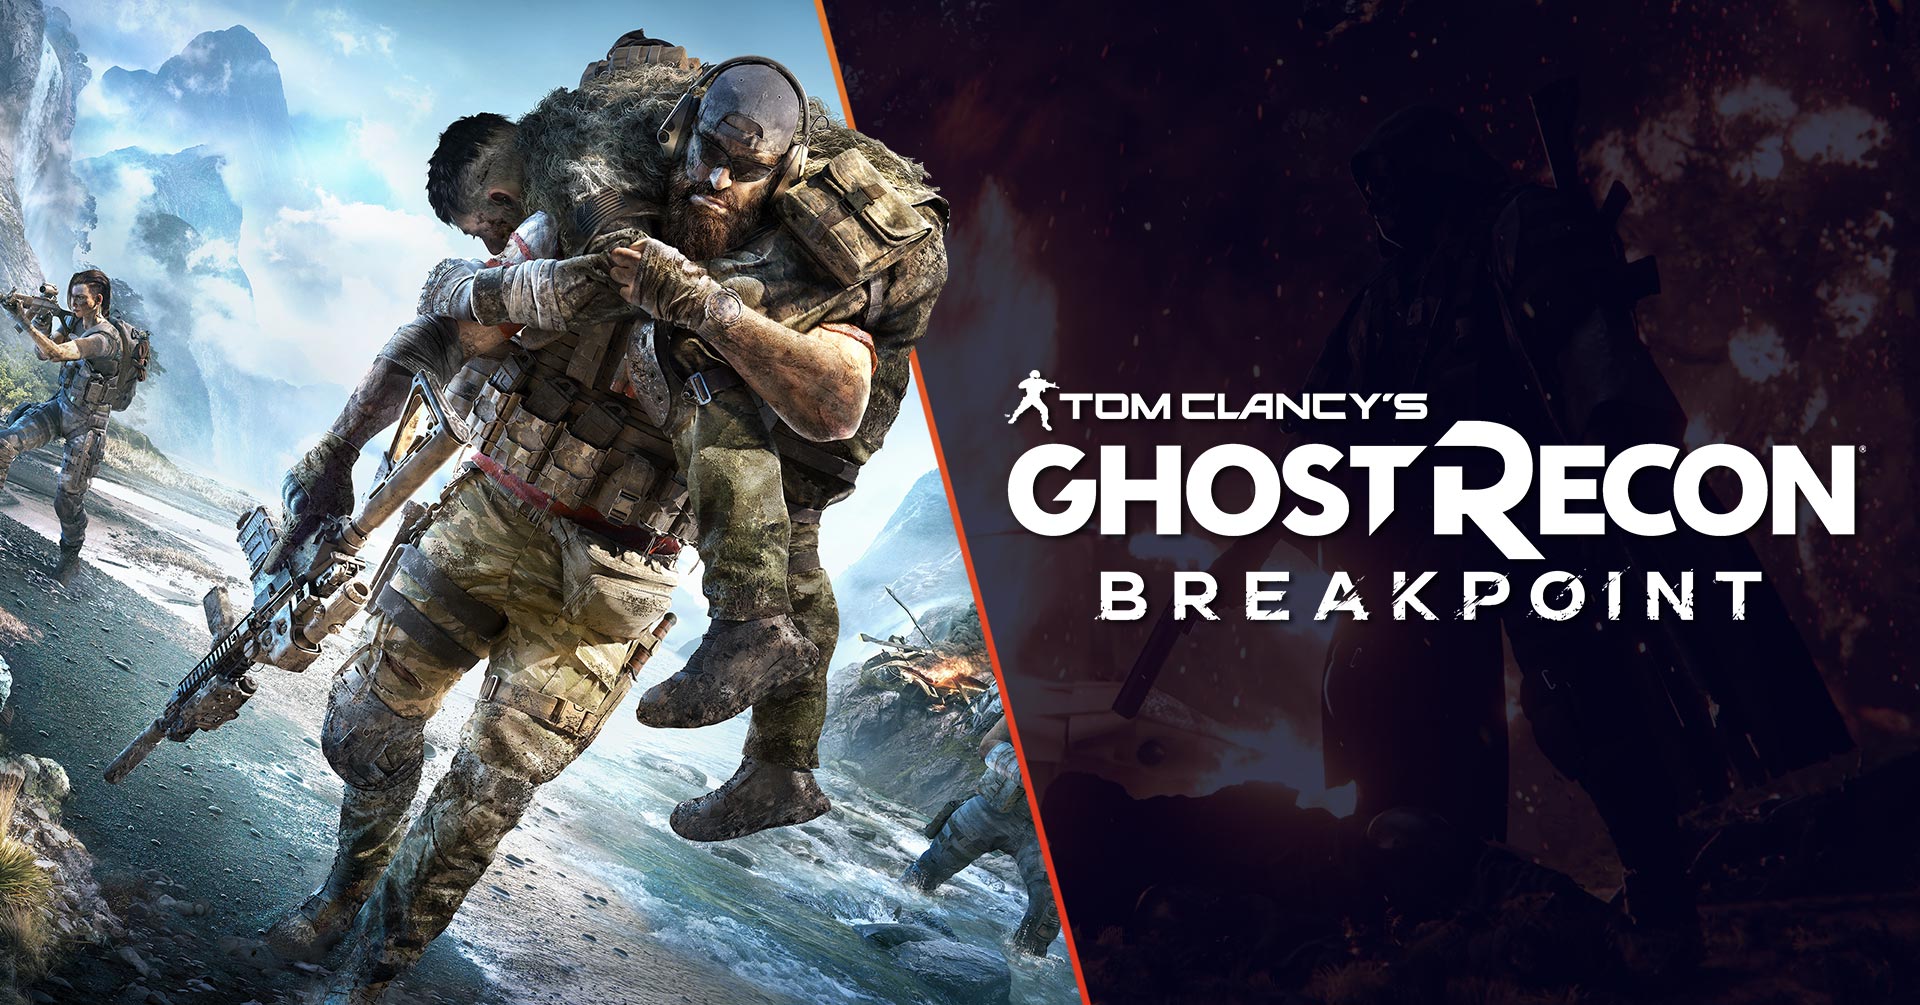 Die Ghost Recon Breakpoint Beta von Tom Clancy ist vom 26. bis 29. September geöffnet